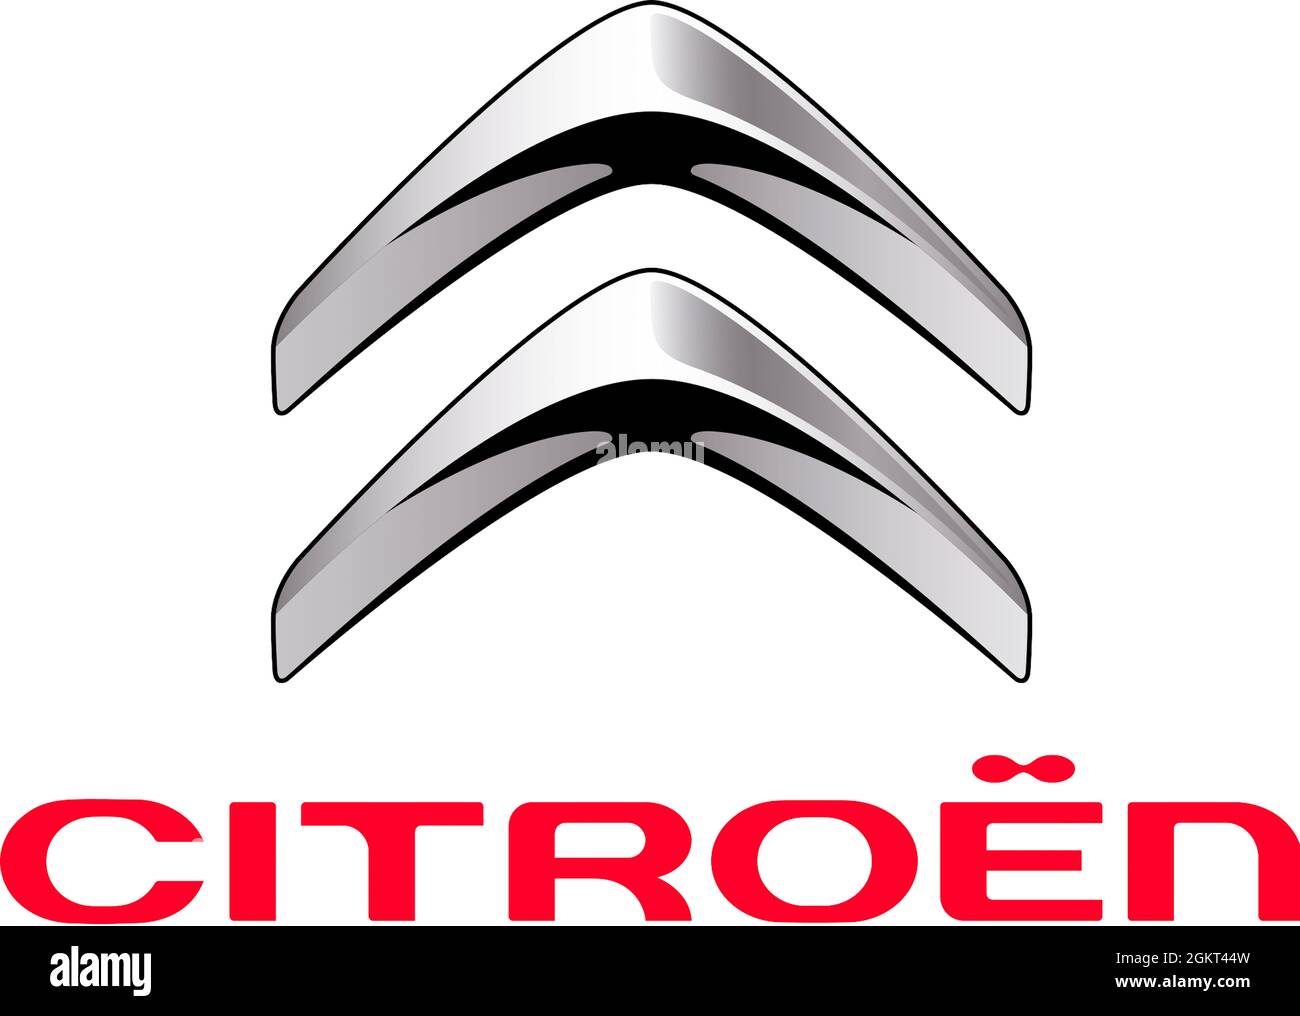 Logo aziendale del produttore di automobili Citroen con sede a Parigi - filiale del gruppo francese di produzione di automobili Peugeot Citroen PSA - F Foto Stock